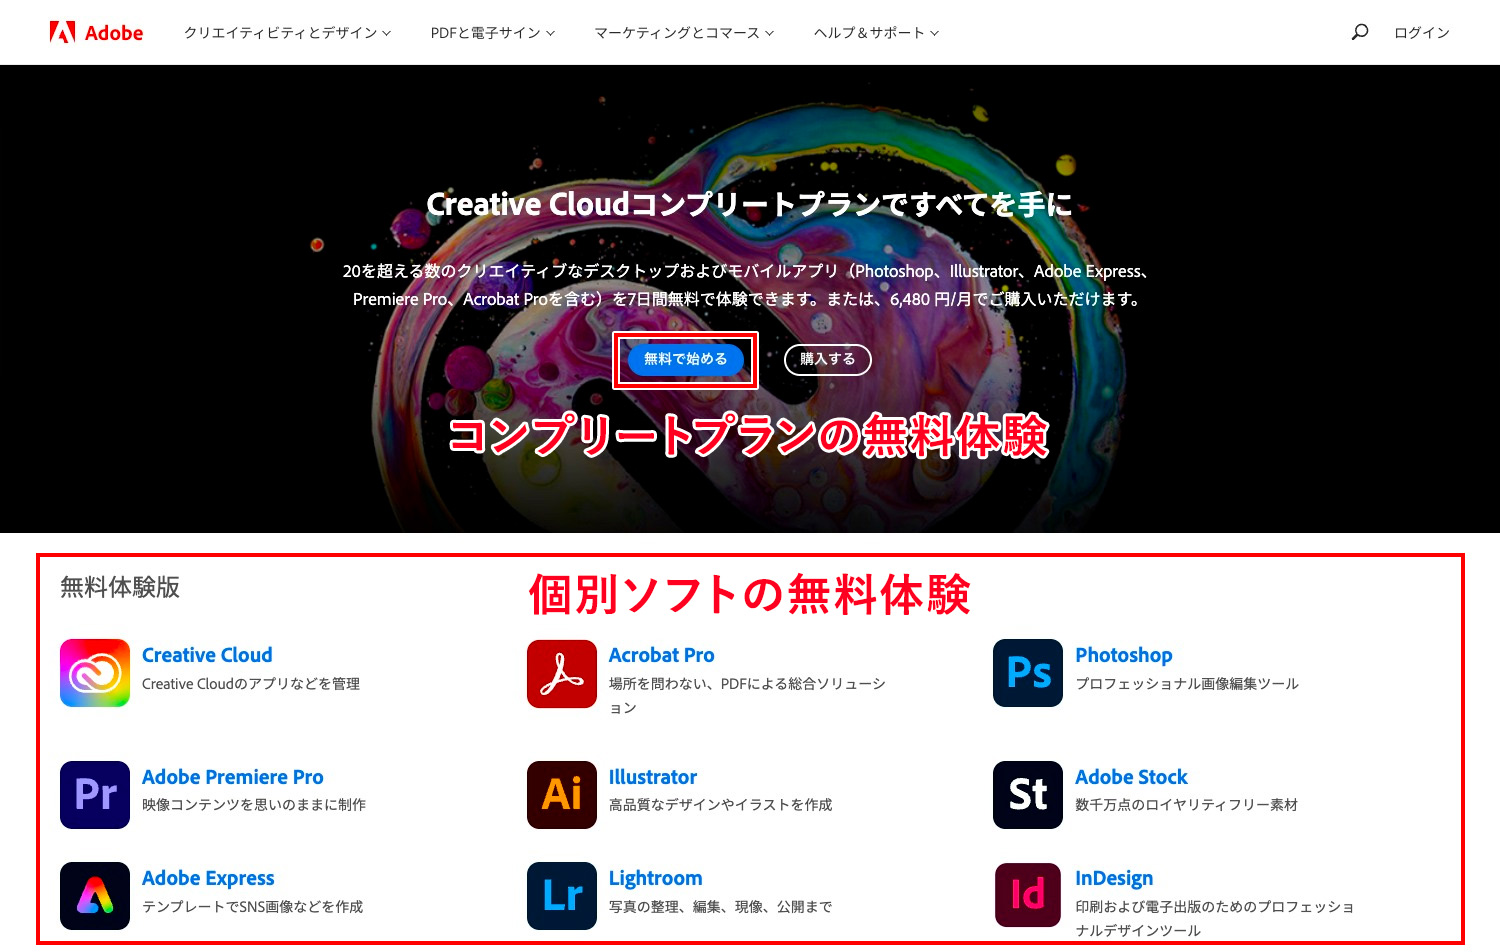 Adobe Creative Cloud無料体験版ダウンロードのページ